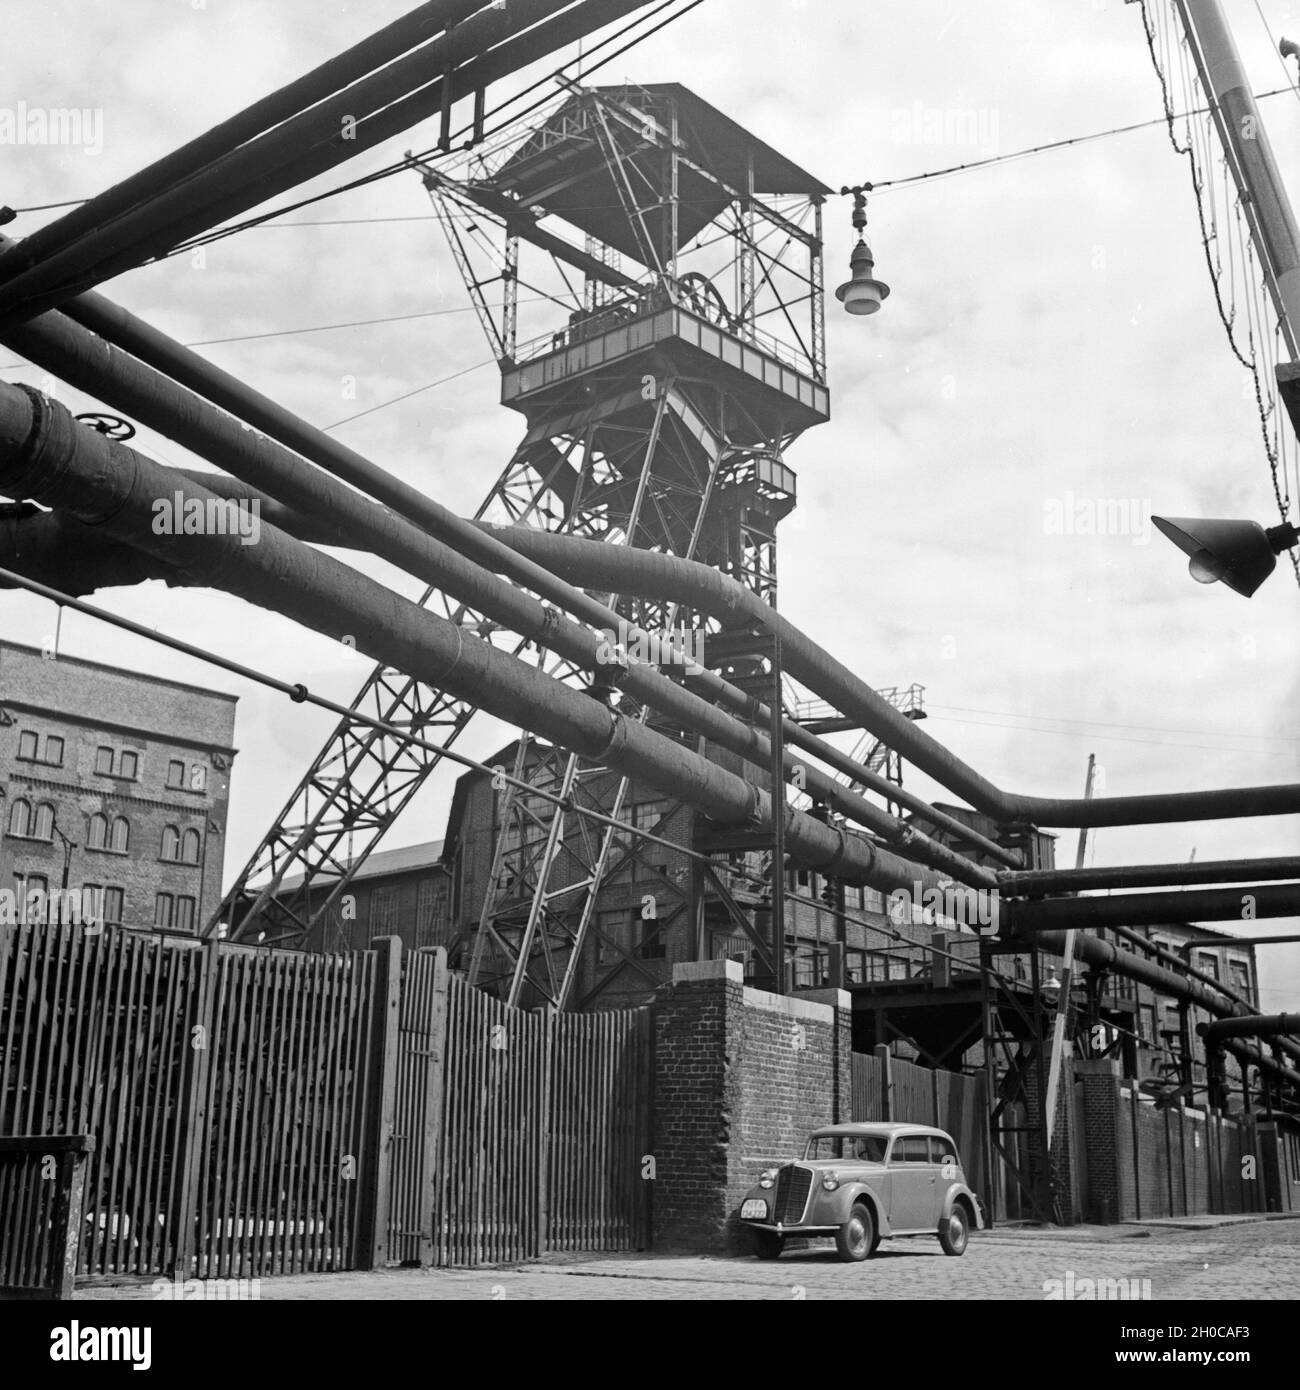 Förderturm der Krupp Gußstahlfabrik in Essen, Deutschland 1930er Jahre. Headgear of the Krupp cast steel works at Essen, Germany 1930s. Stock Photo